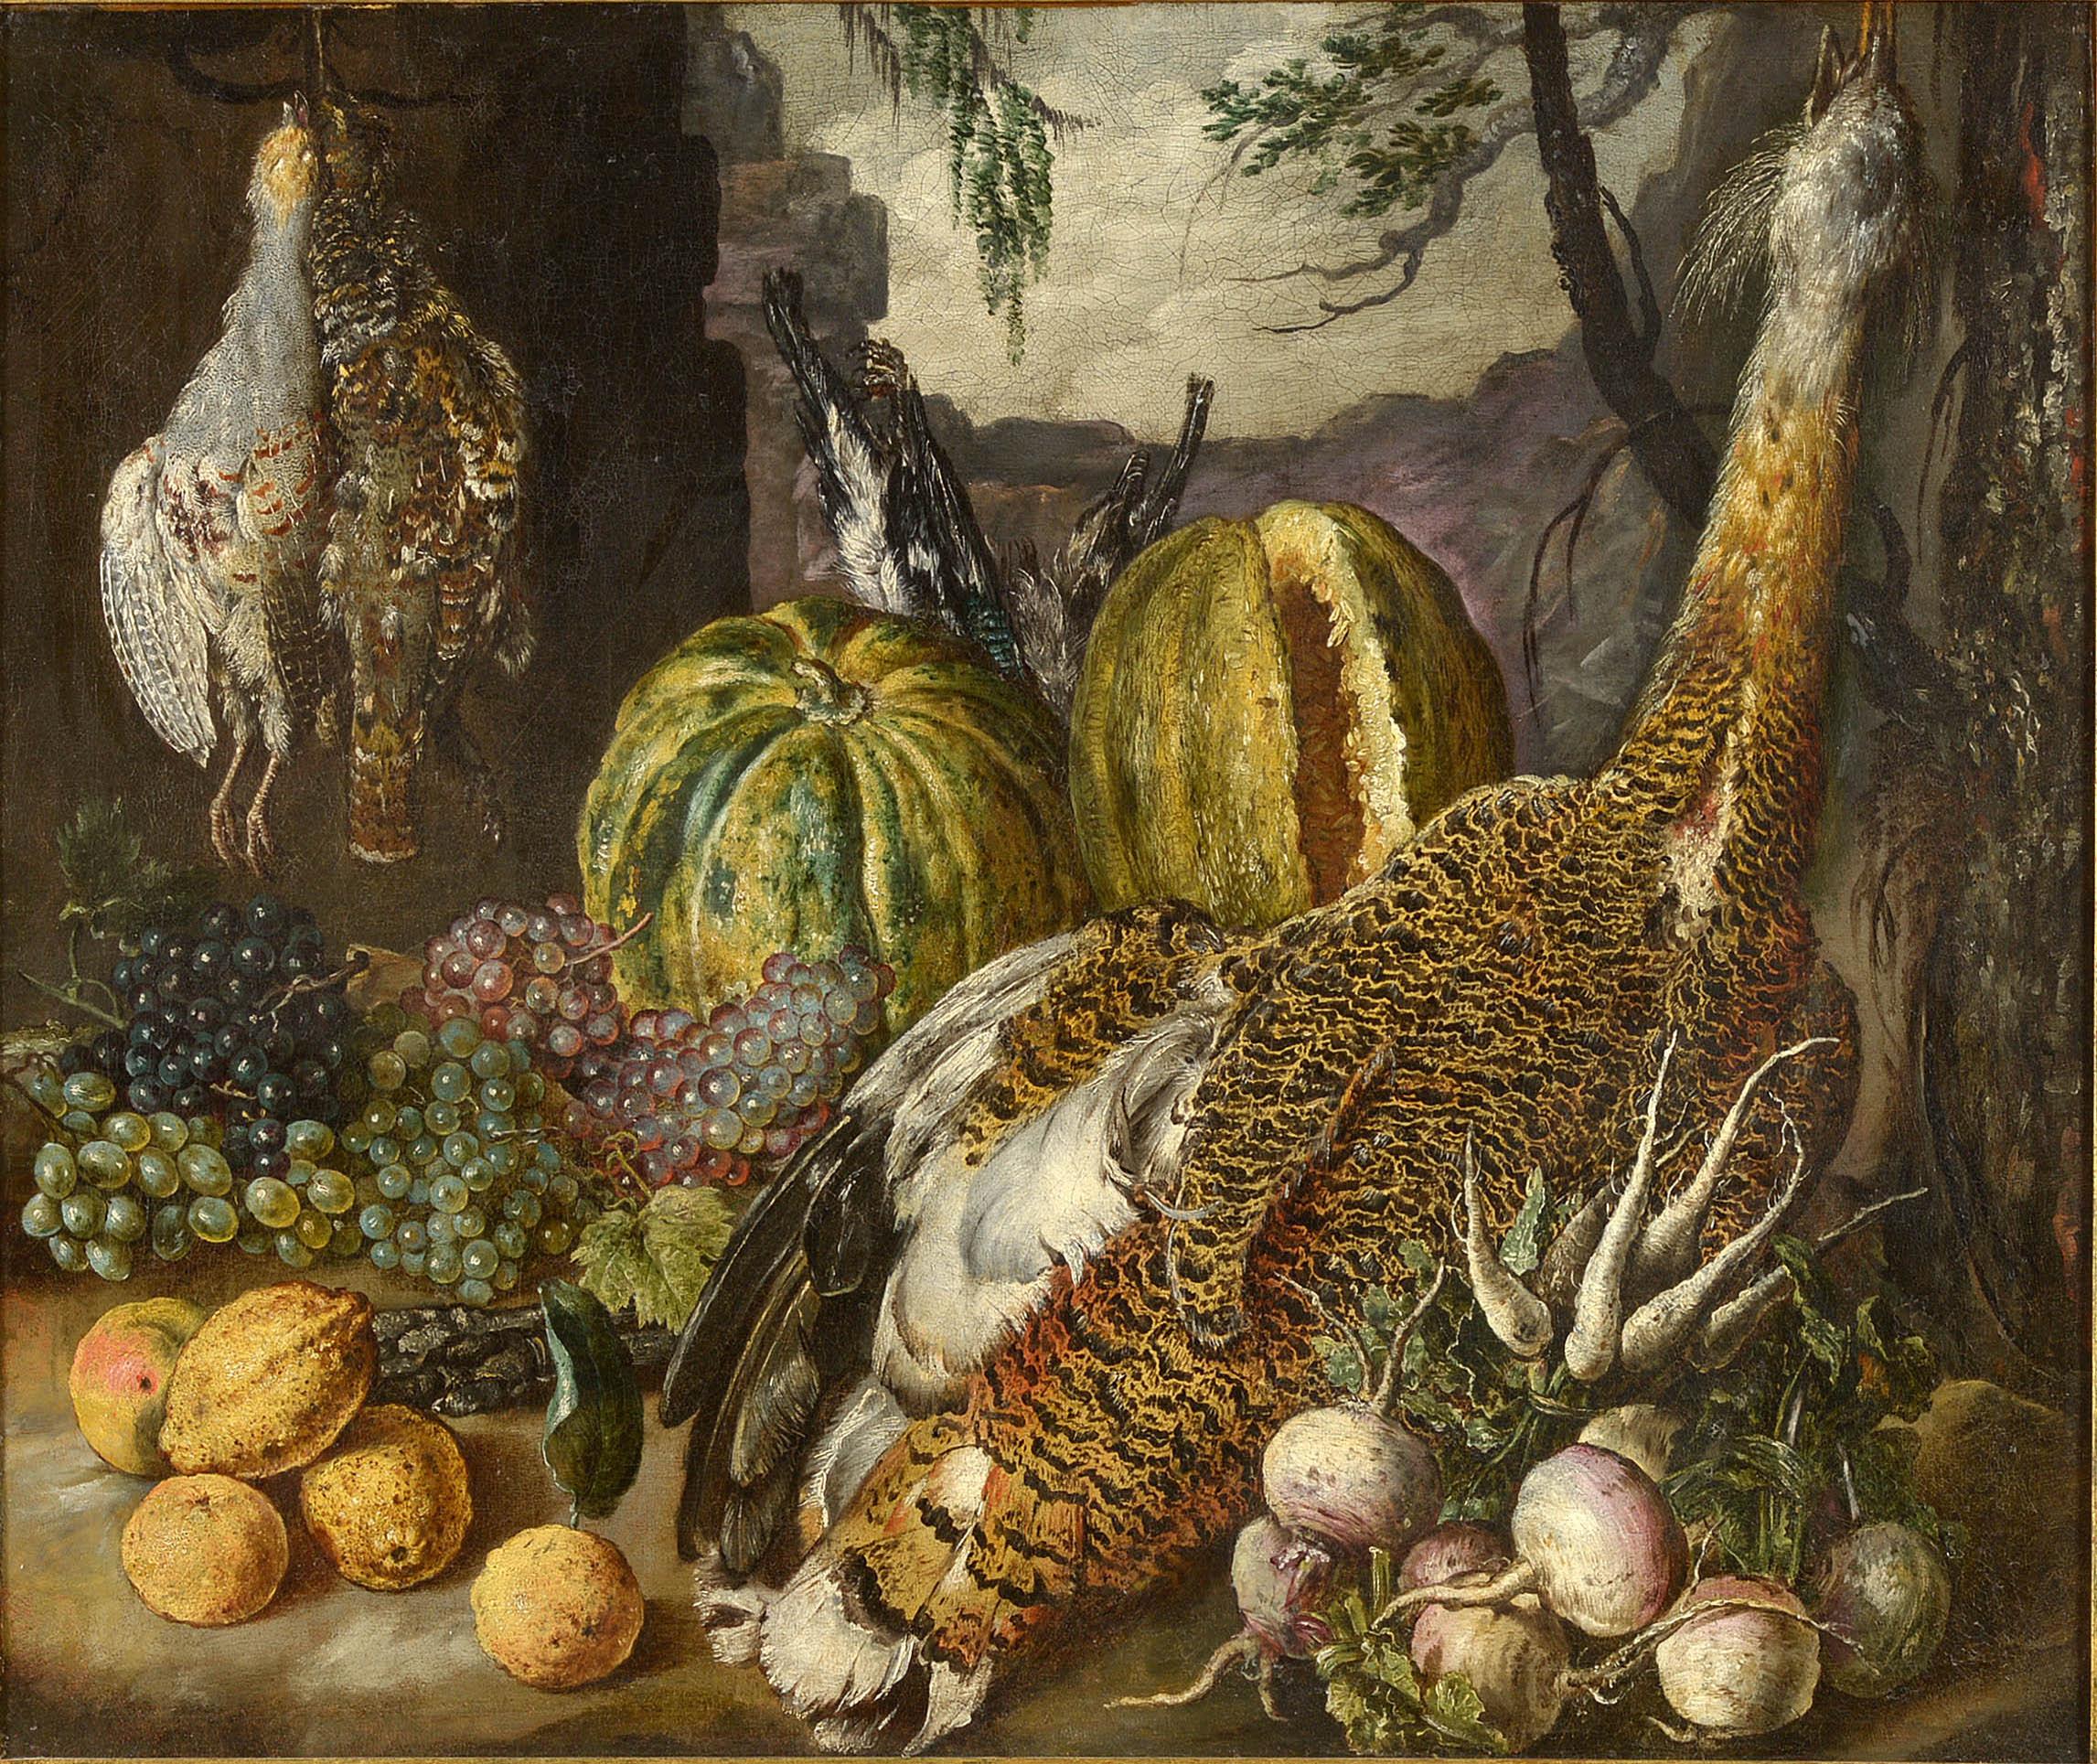 Nature morte avec oiseaux, fruits et légumes, paysage signé Gottfried Libalt